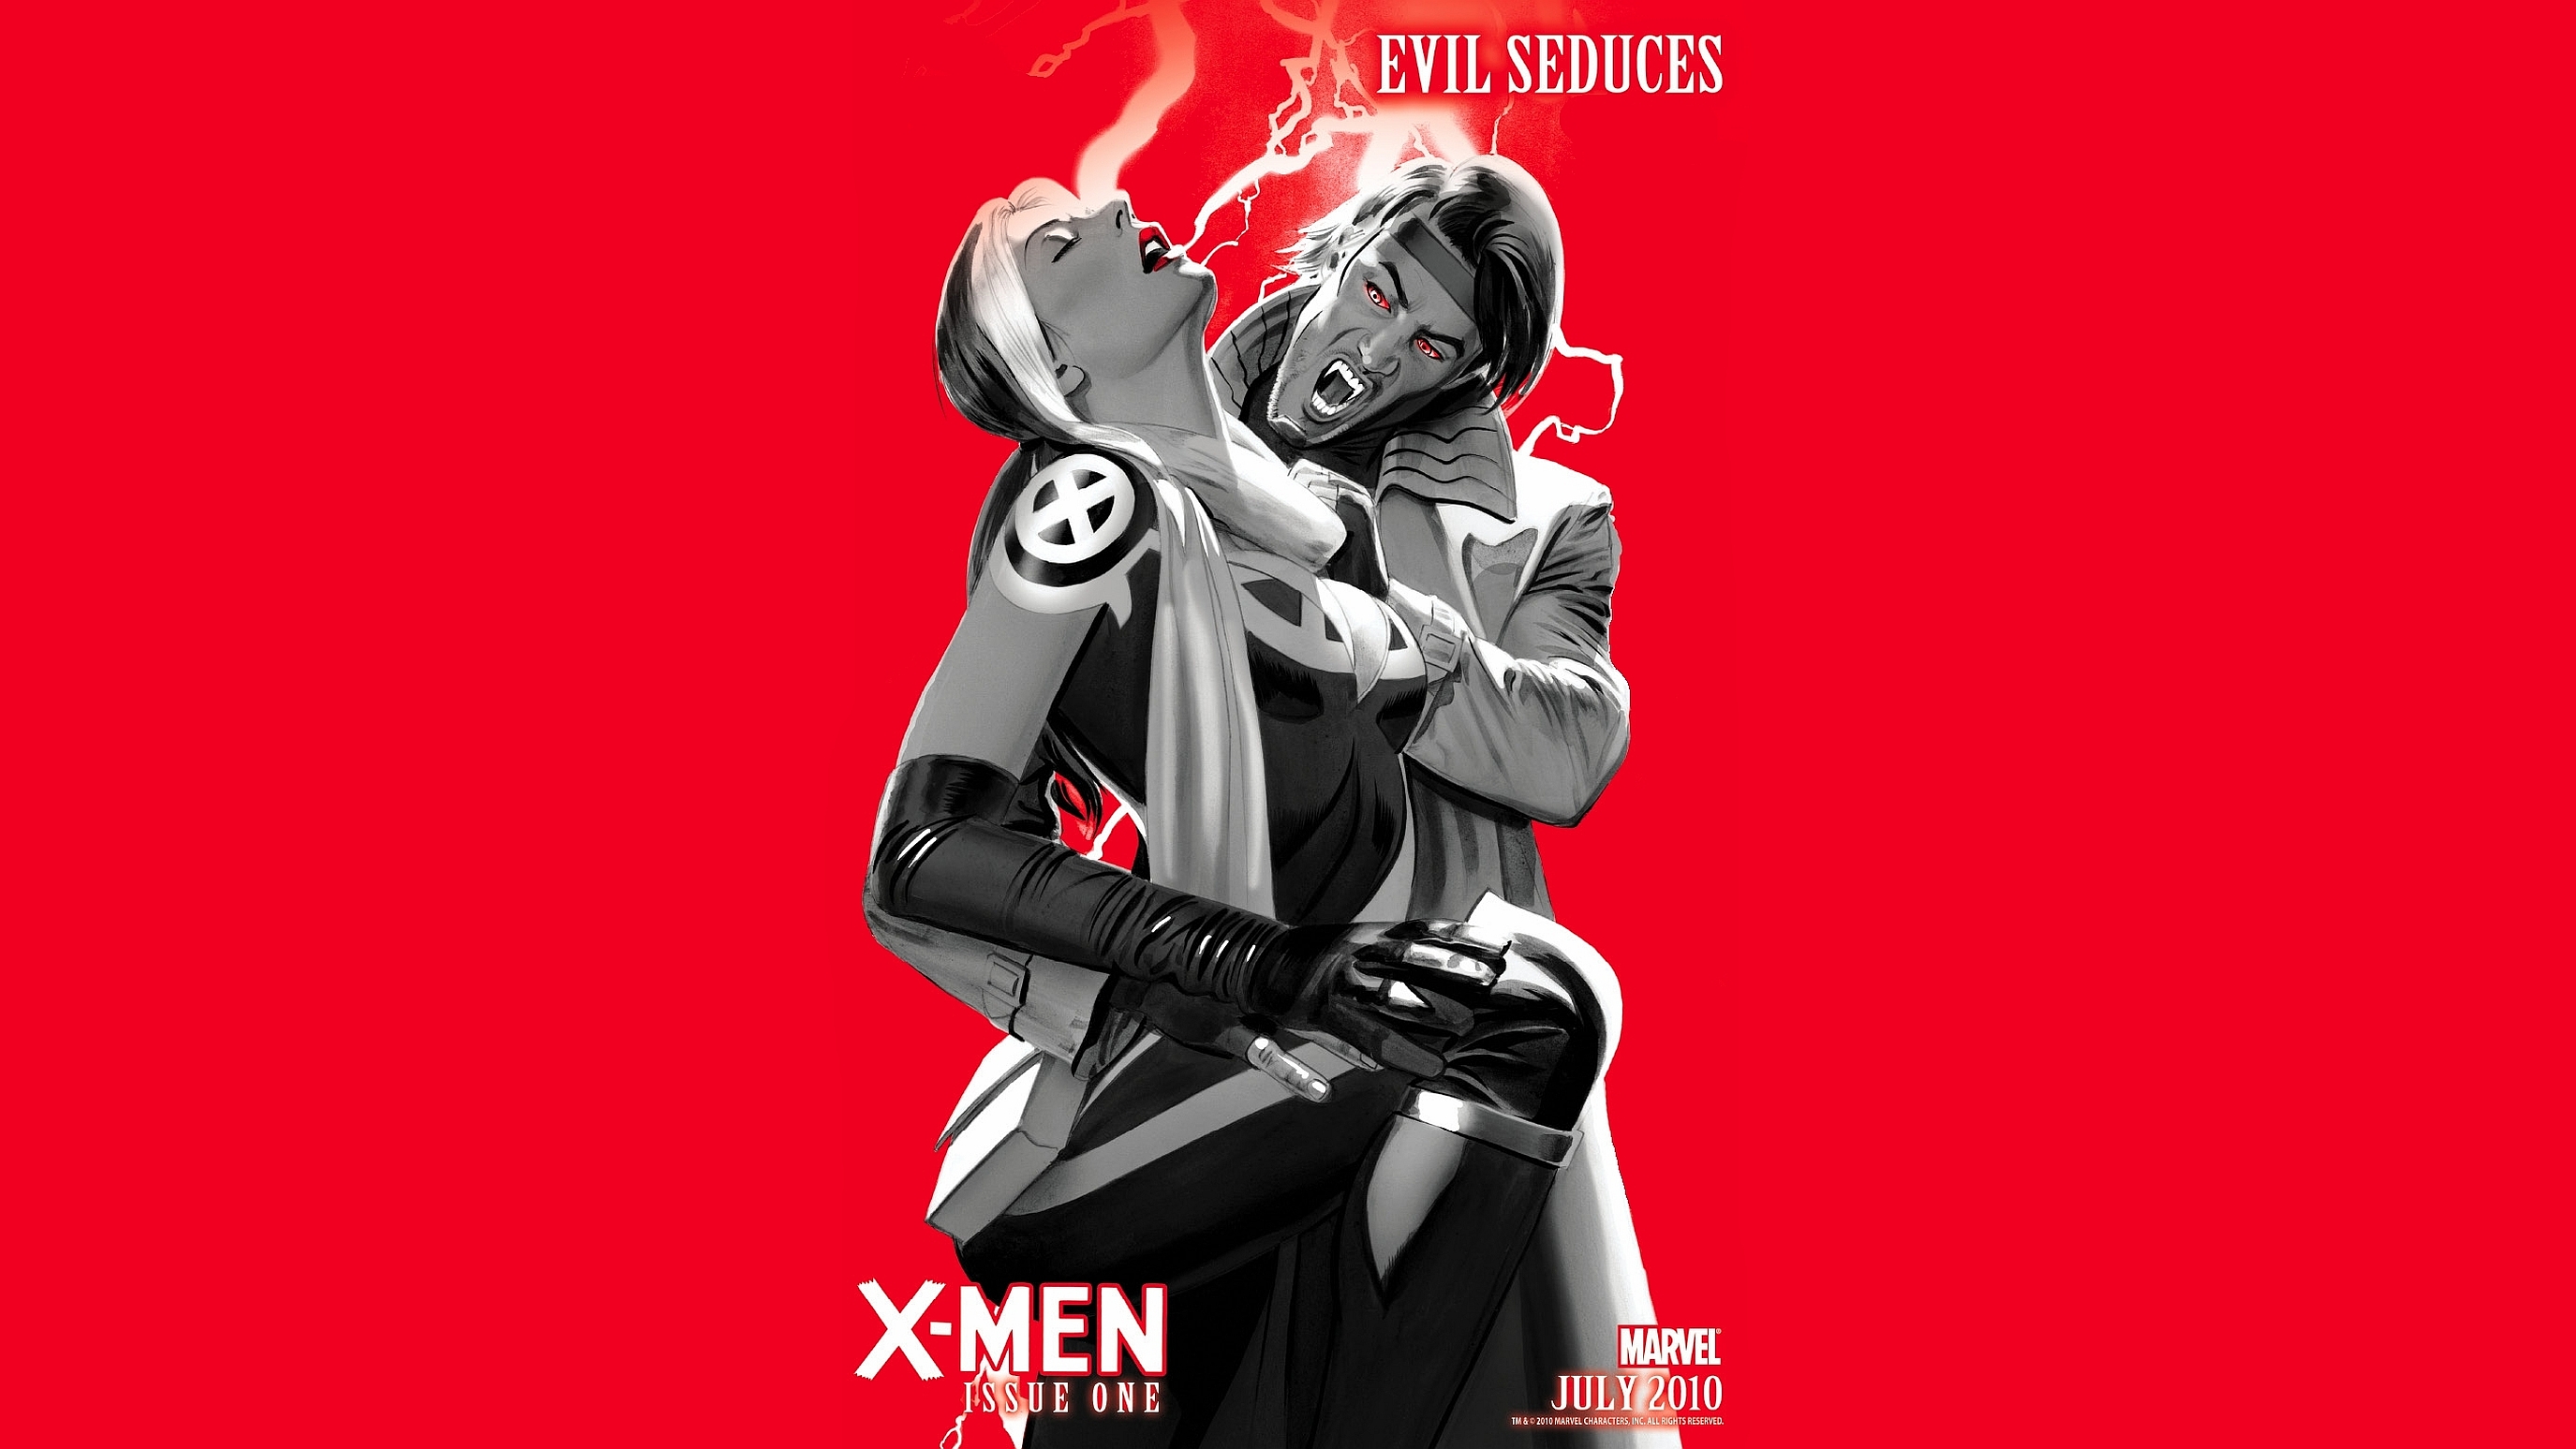 X-men: Evil Seduces #8